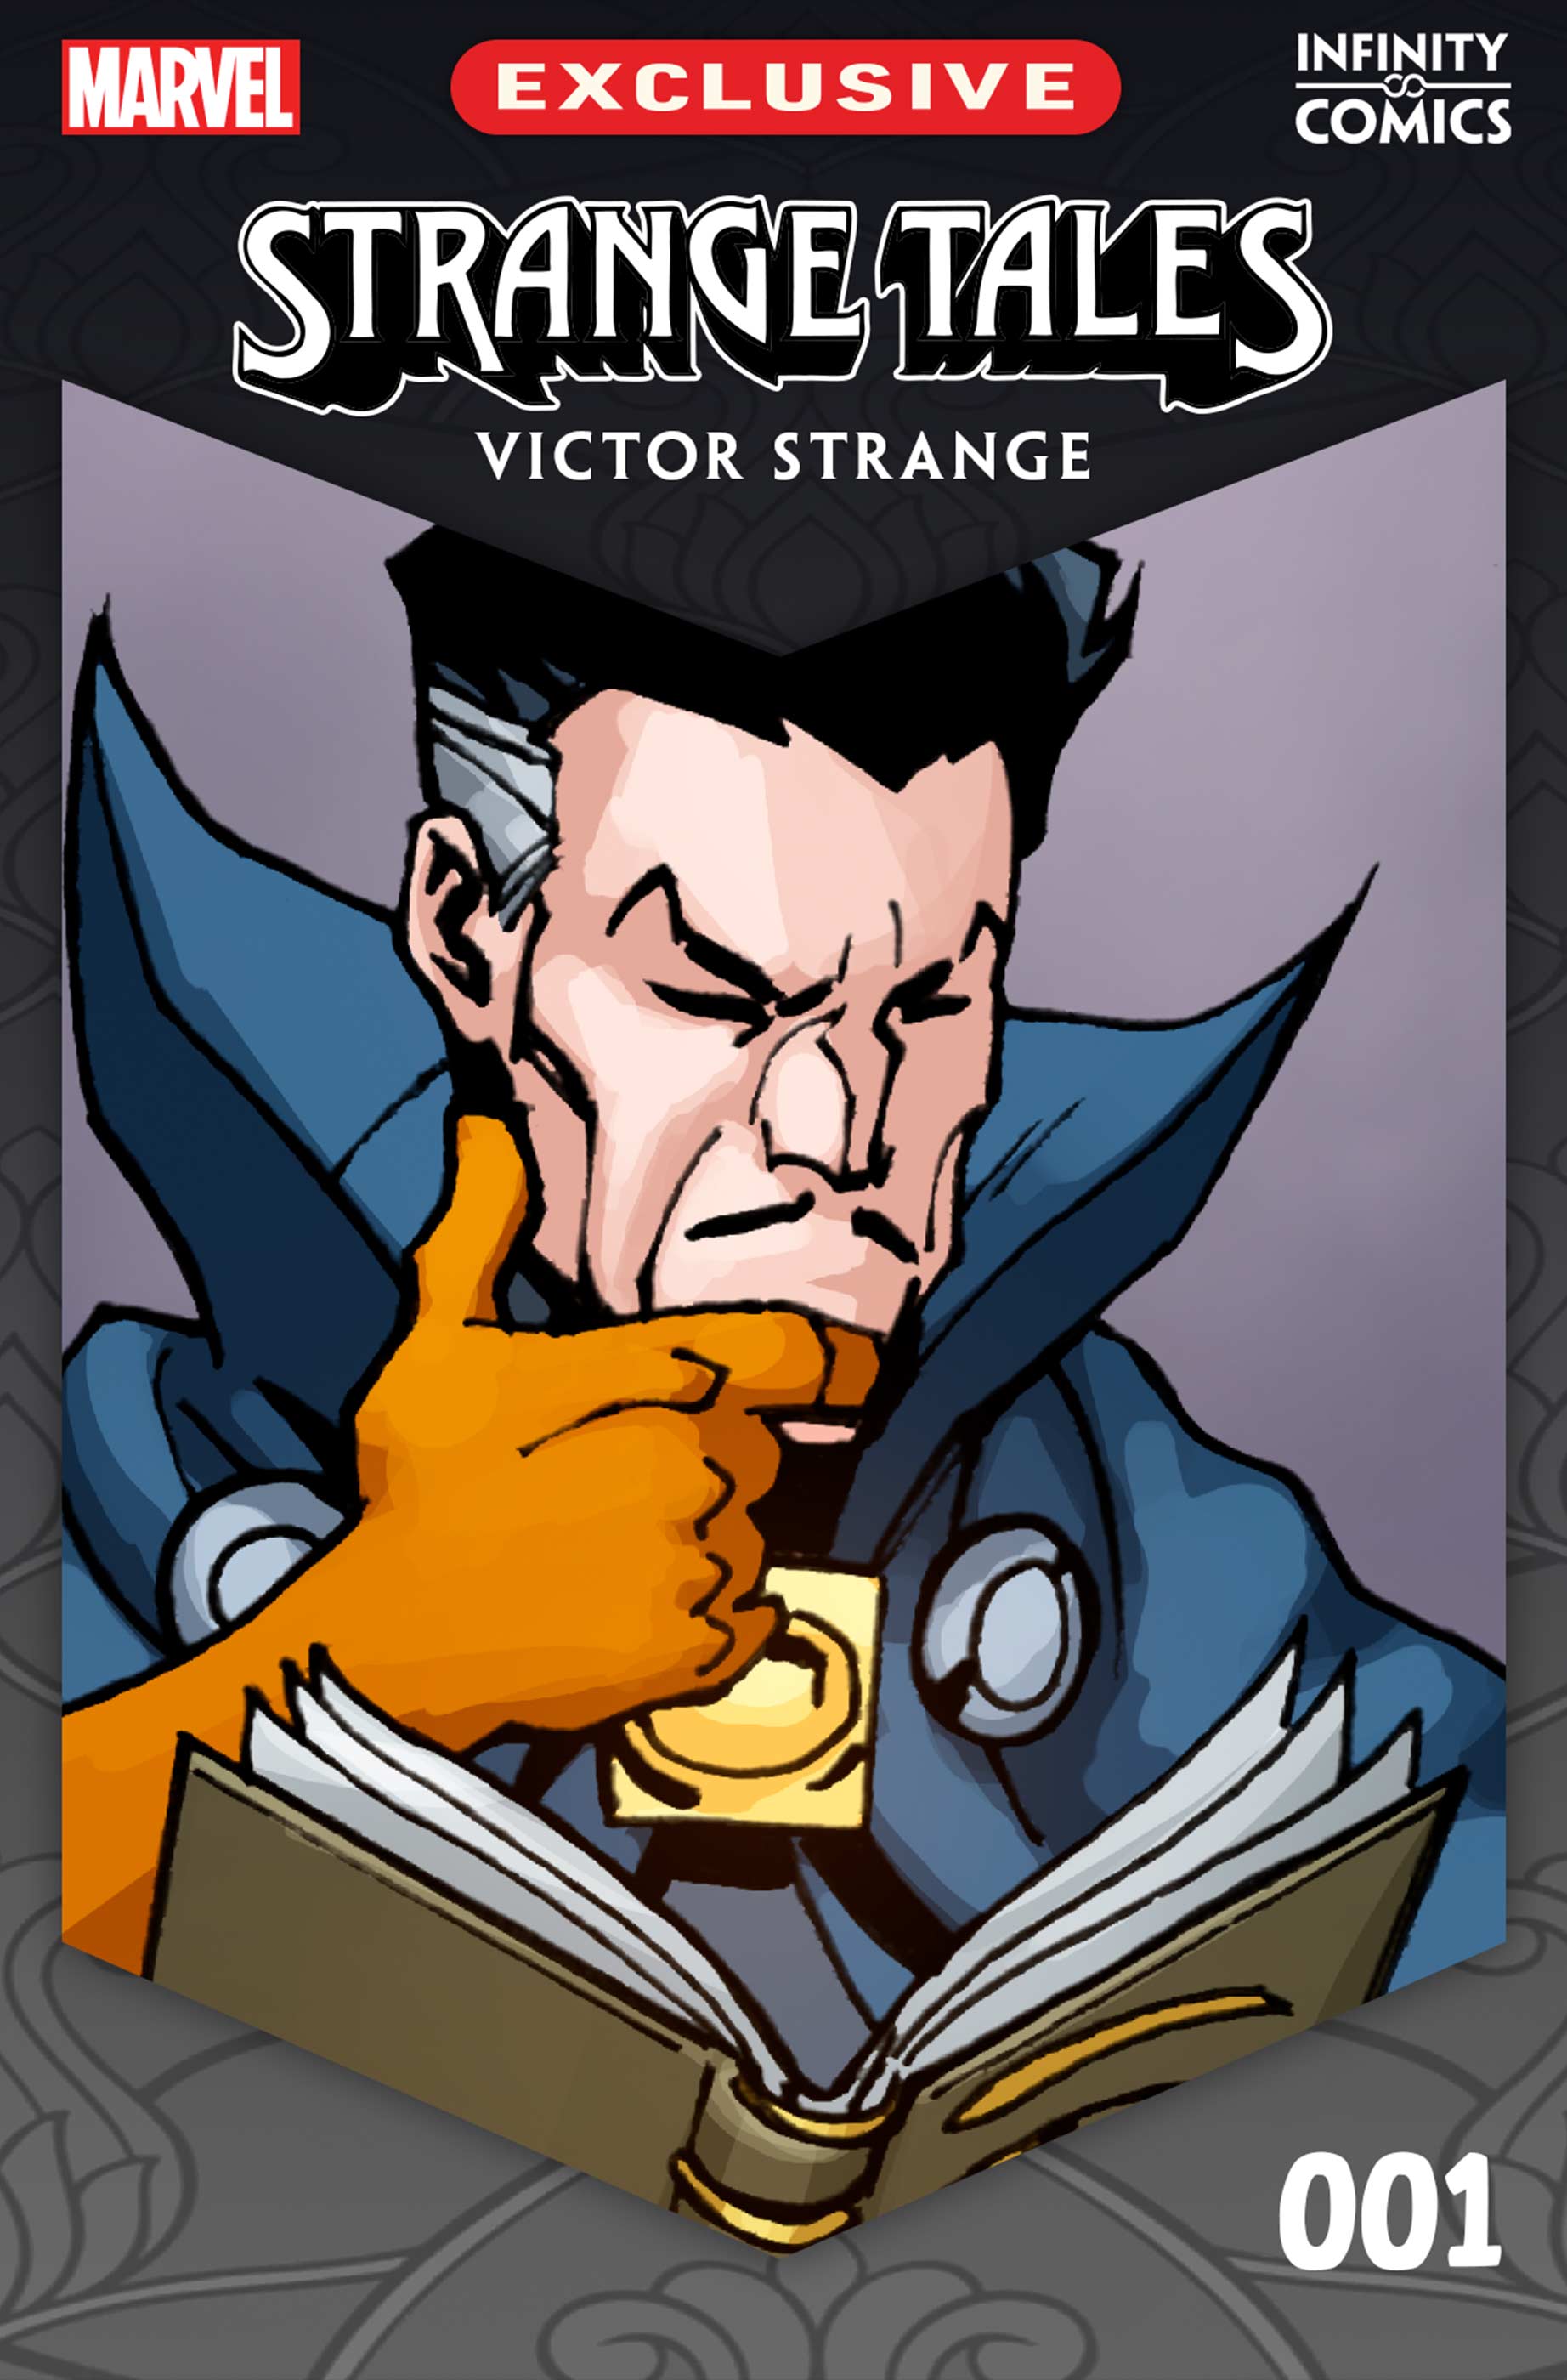 Victor strange